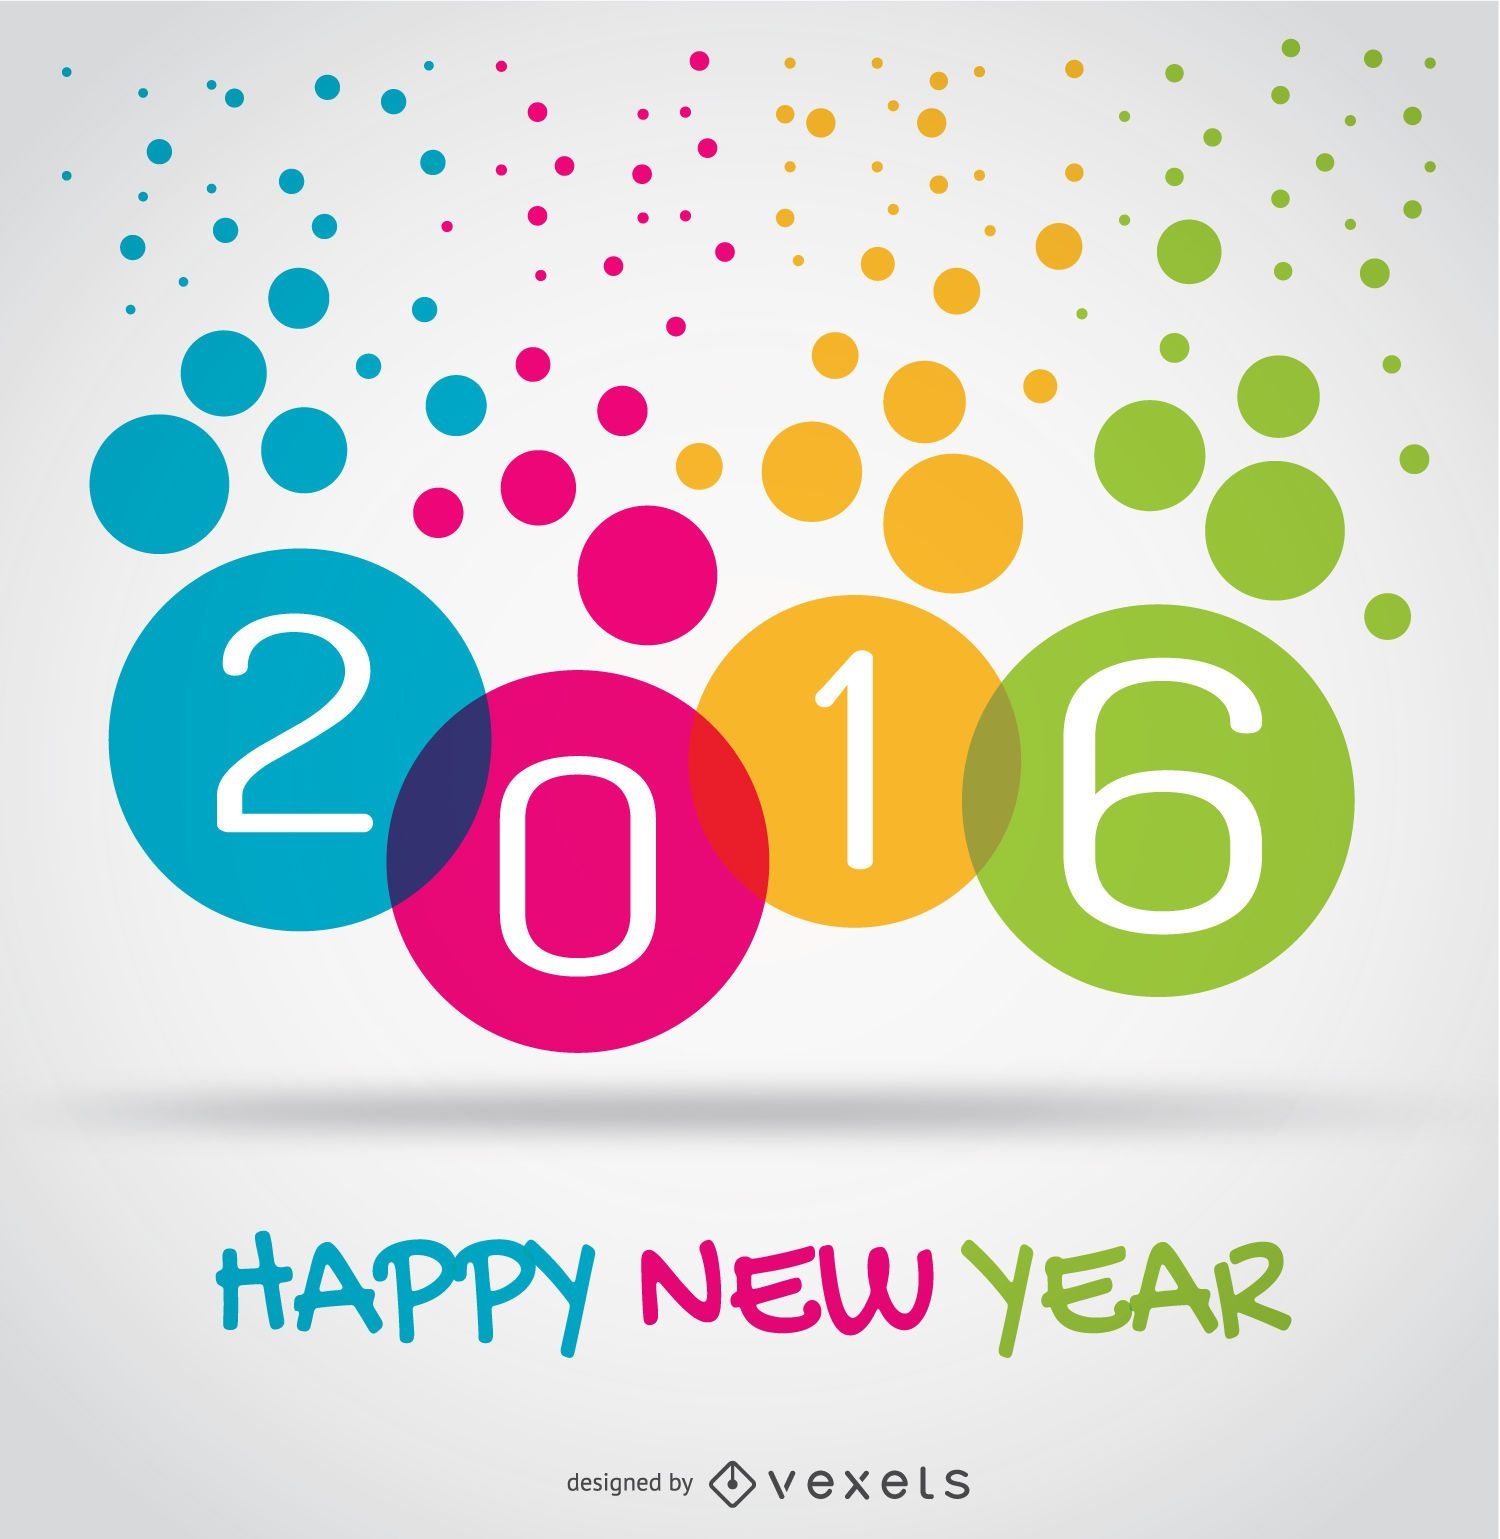 Círculos coloridos de ano novo de 2016